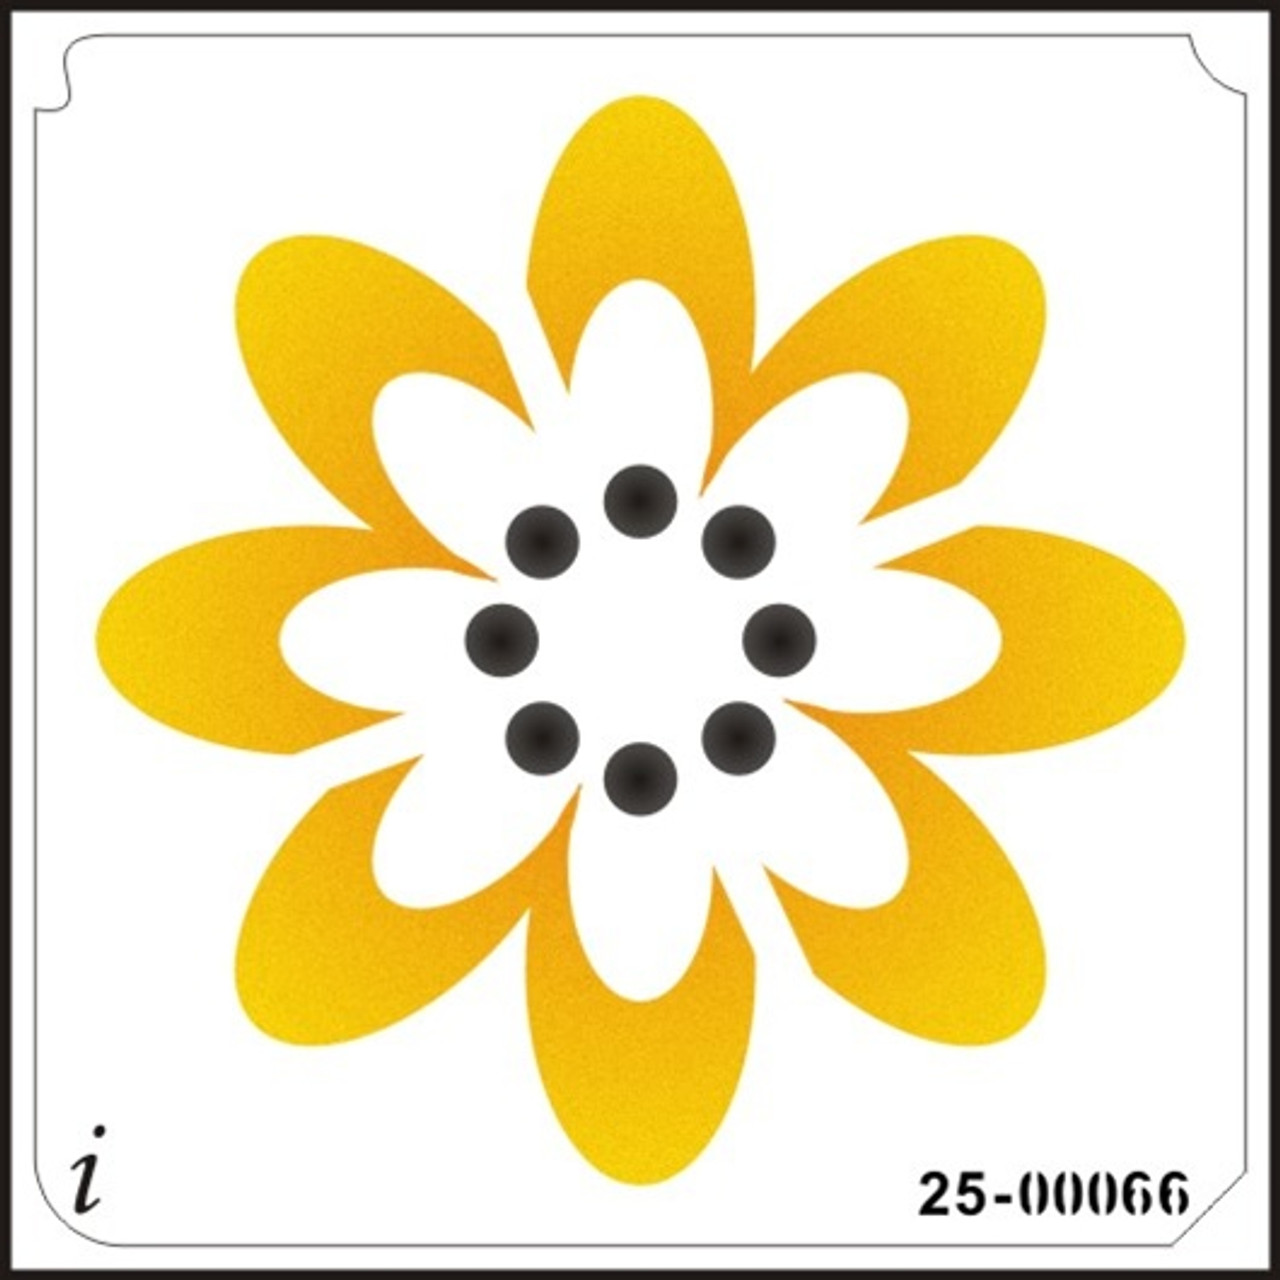 19-00025 Retro Flower Stencil - iStencils